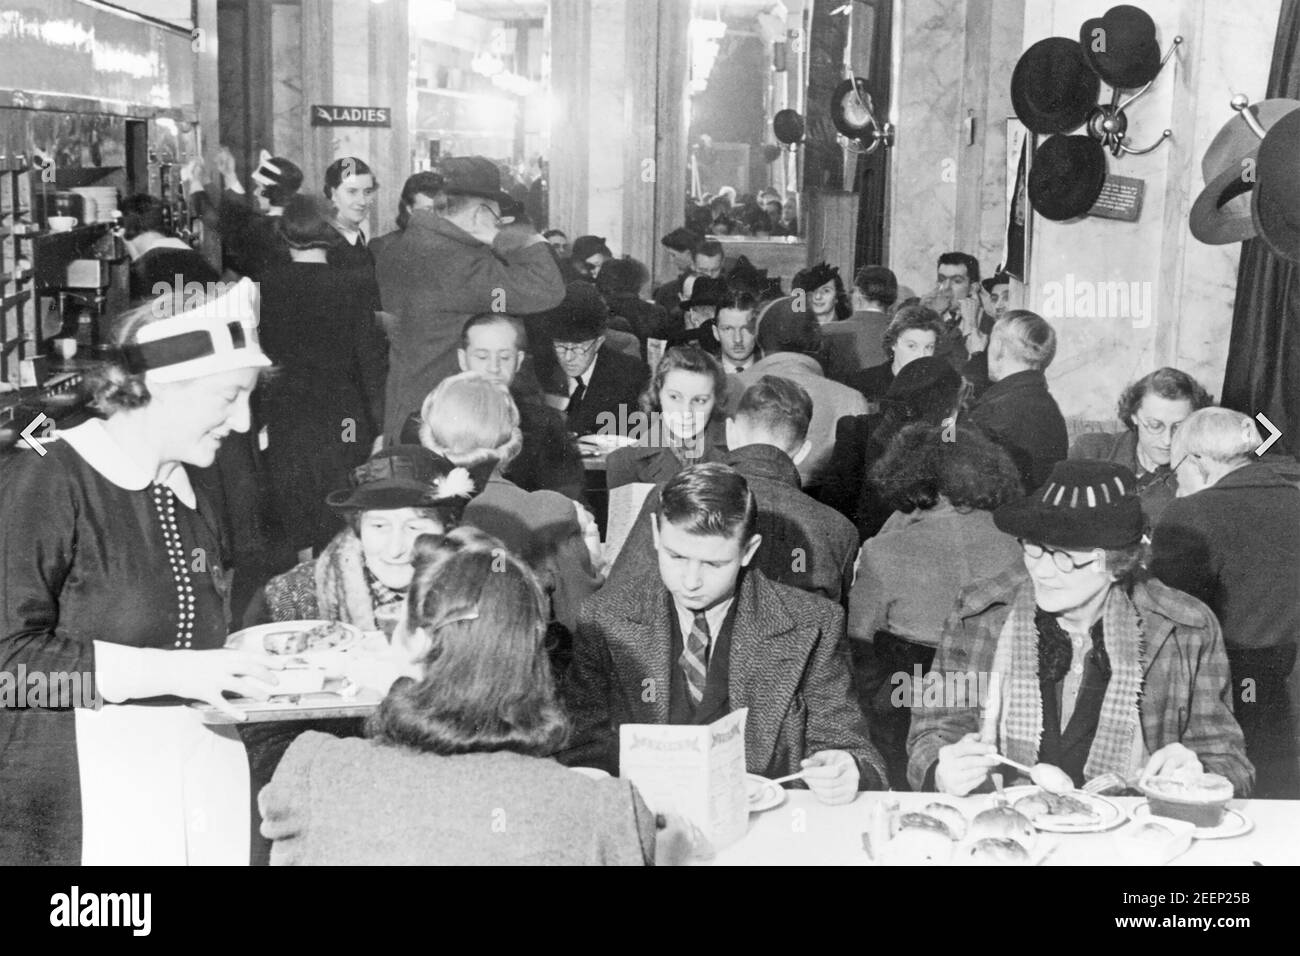 J. LYONS & CO chaîne d'hôtels, de restaurants et de restaurants britanniques fondée en 1884. Les clients ont emballé pour un thé de l'après-midi au célèbre Lyons Corner House de Coventry Street, Londres, en janvier 1942. L'une des célèbres serveuses Nippie est de servir. Banque D'Images